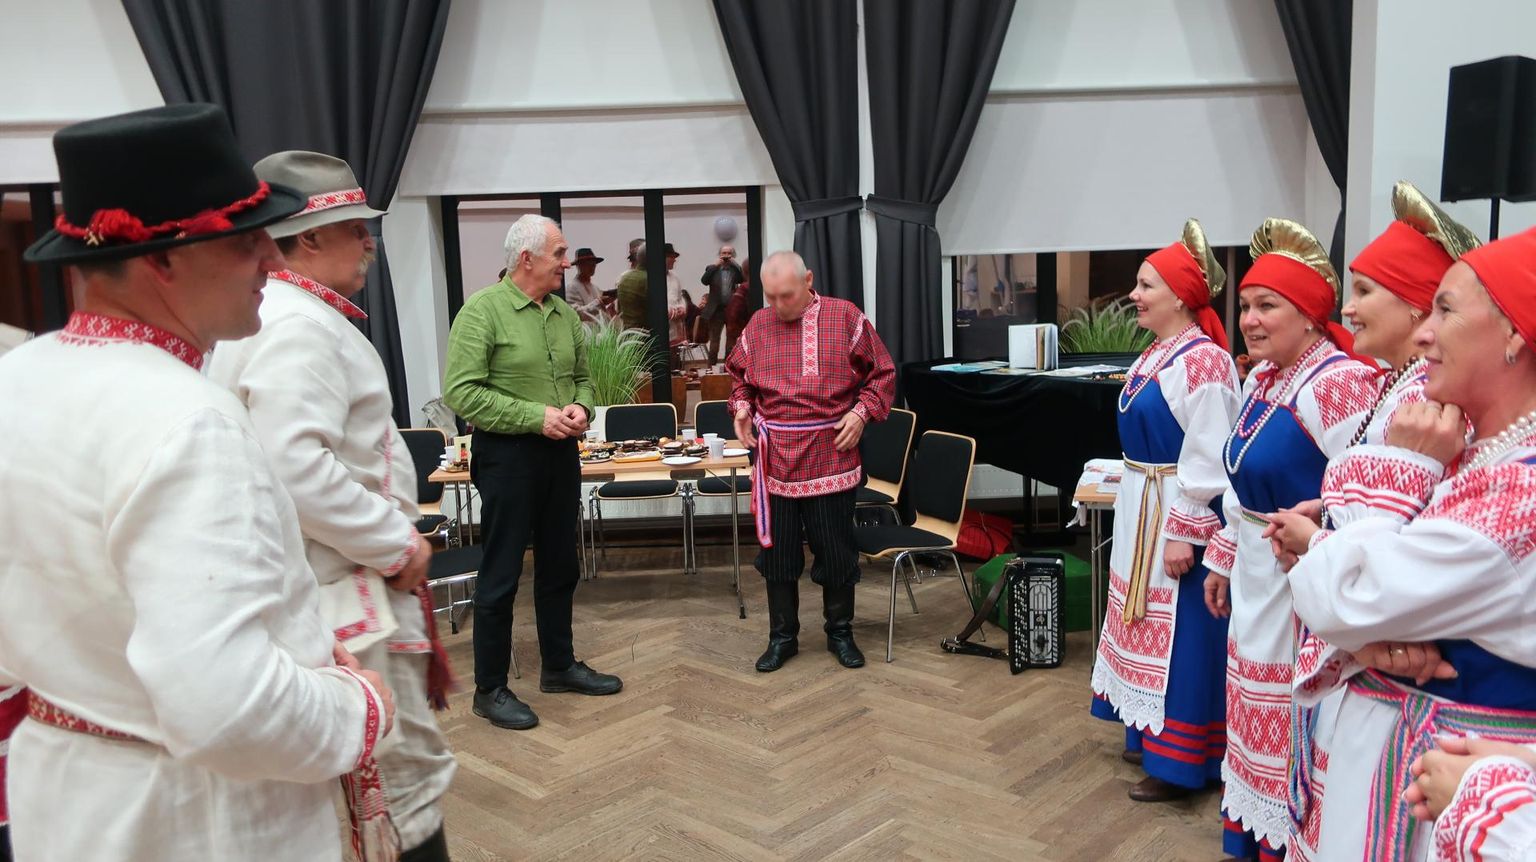 Külalised Komimaalt (paremal) leidsid Põlva seto seltsi esindajatega kiiresti ühise keele.